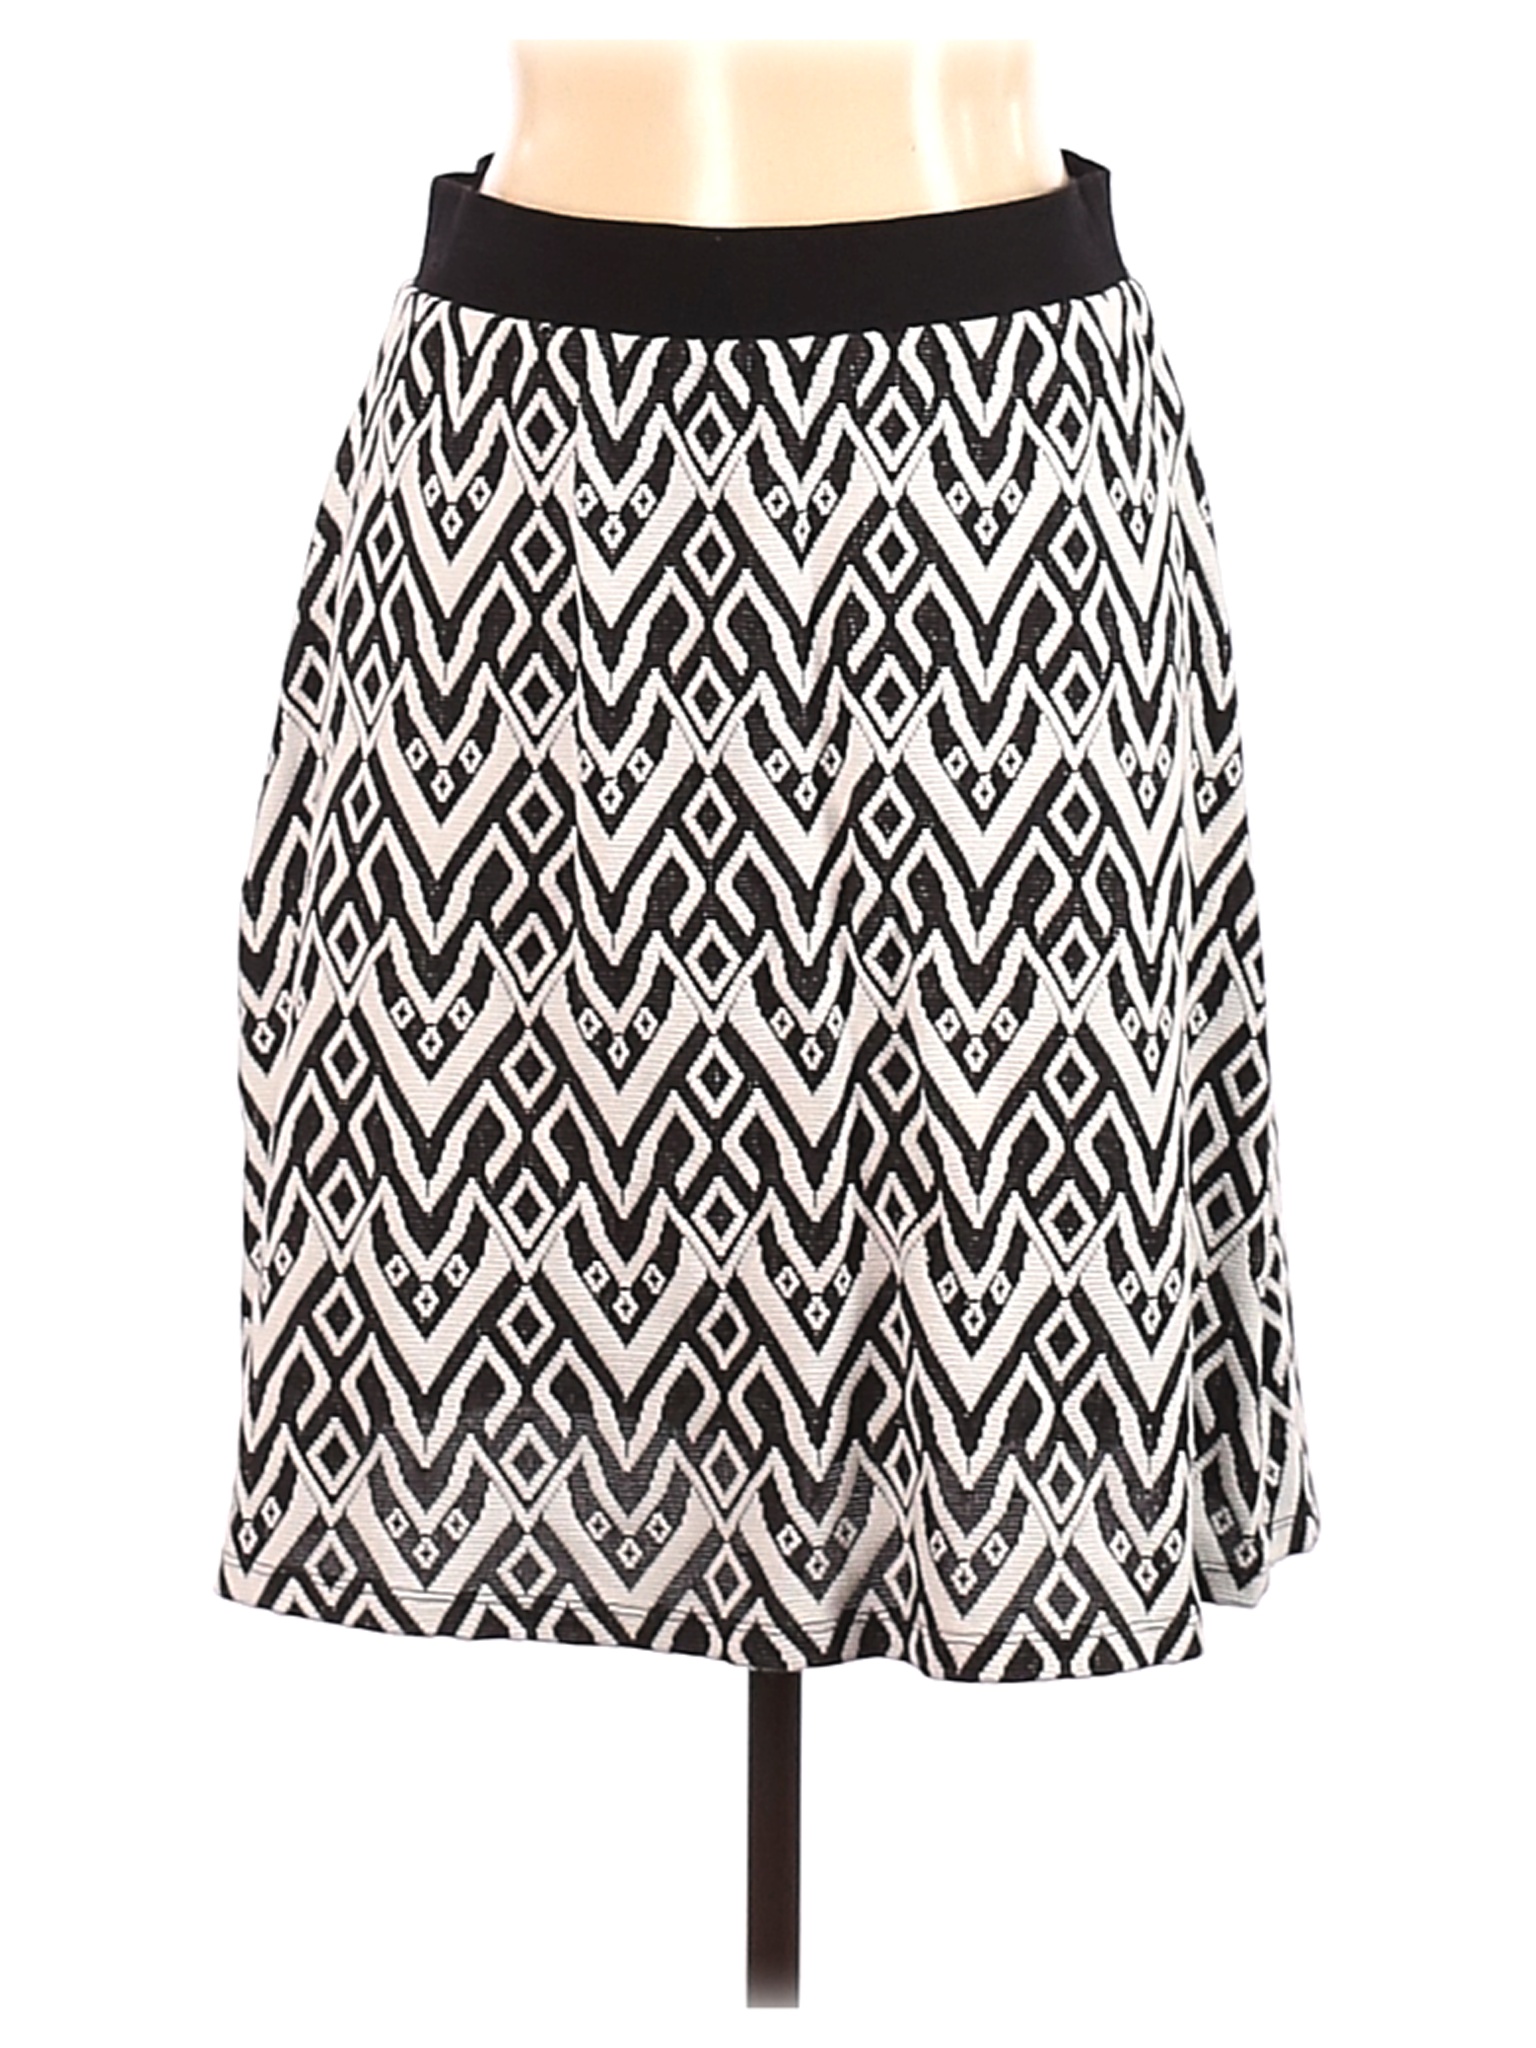 Gilli Women Black Casual Skirt L | eBay